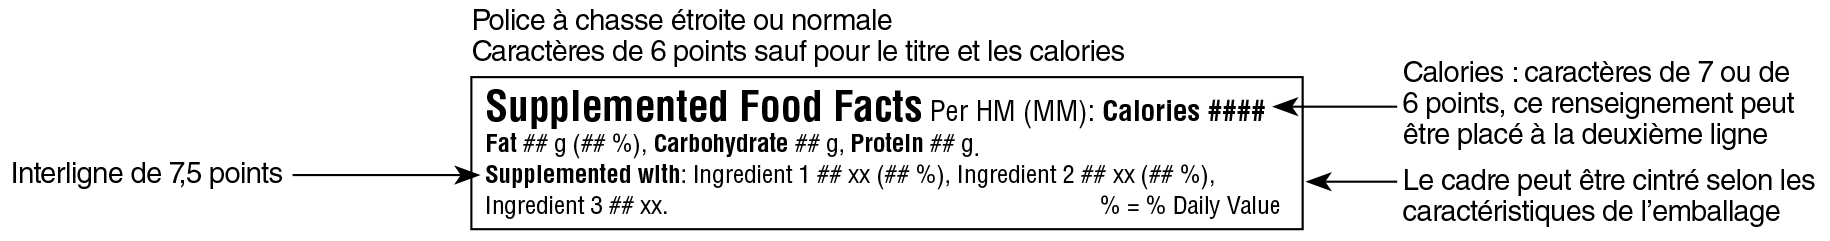 Modèle linéaire simplifié anglais du tableau des renseignements sur les aliments supplémentés avec indications. Version texte ci-dessous.